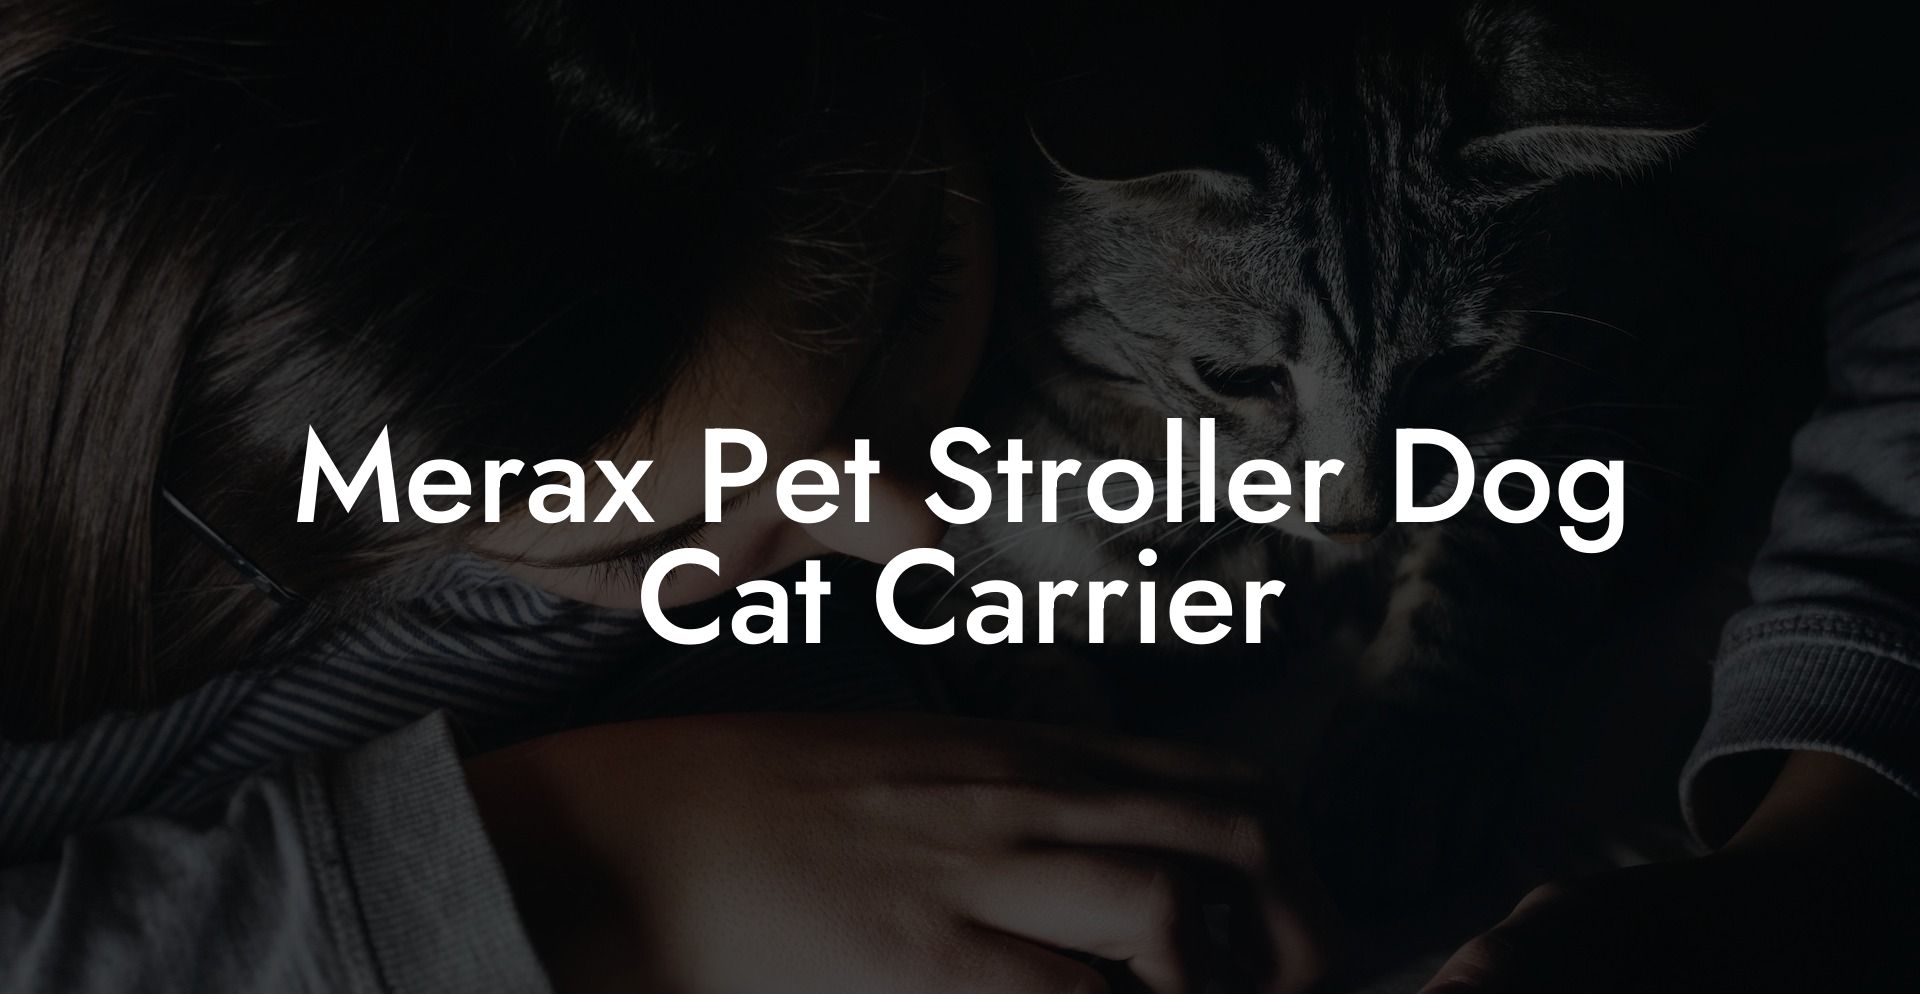 Merax Pet Stroller Dog Cat Carrier